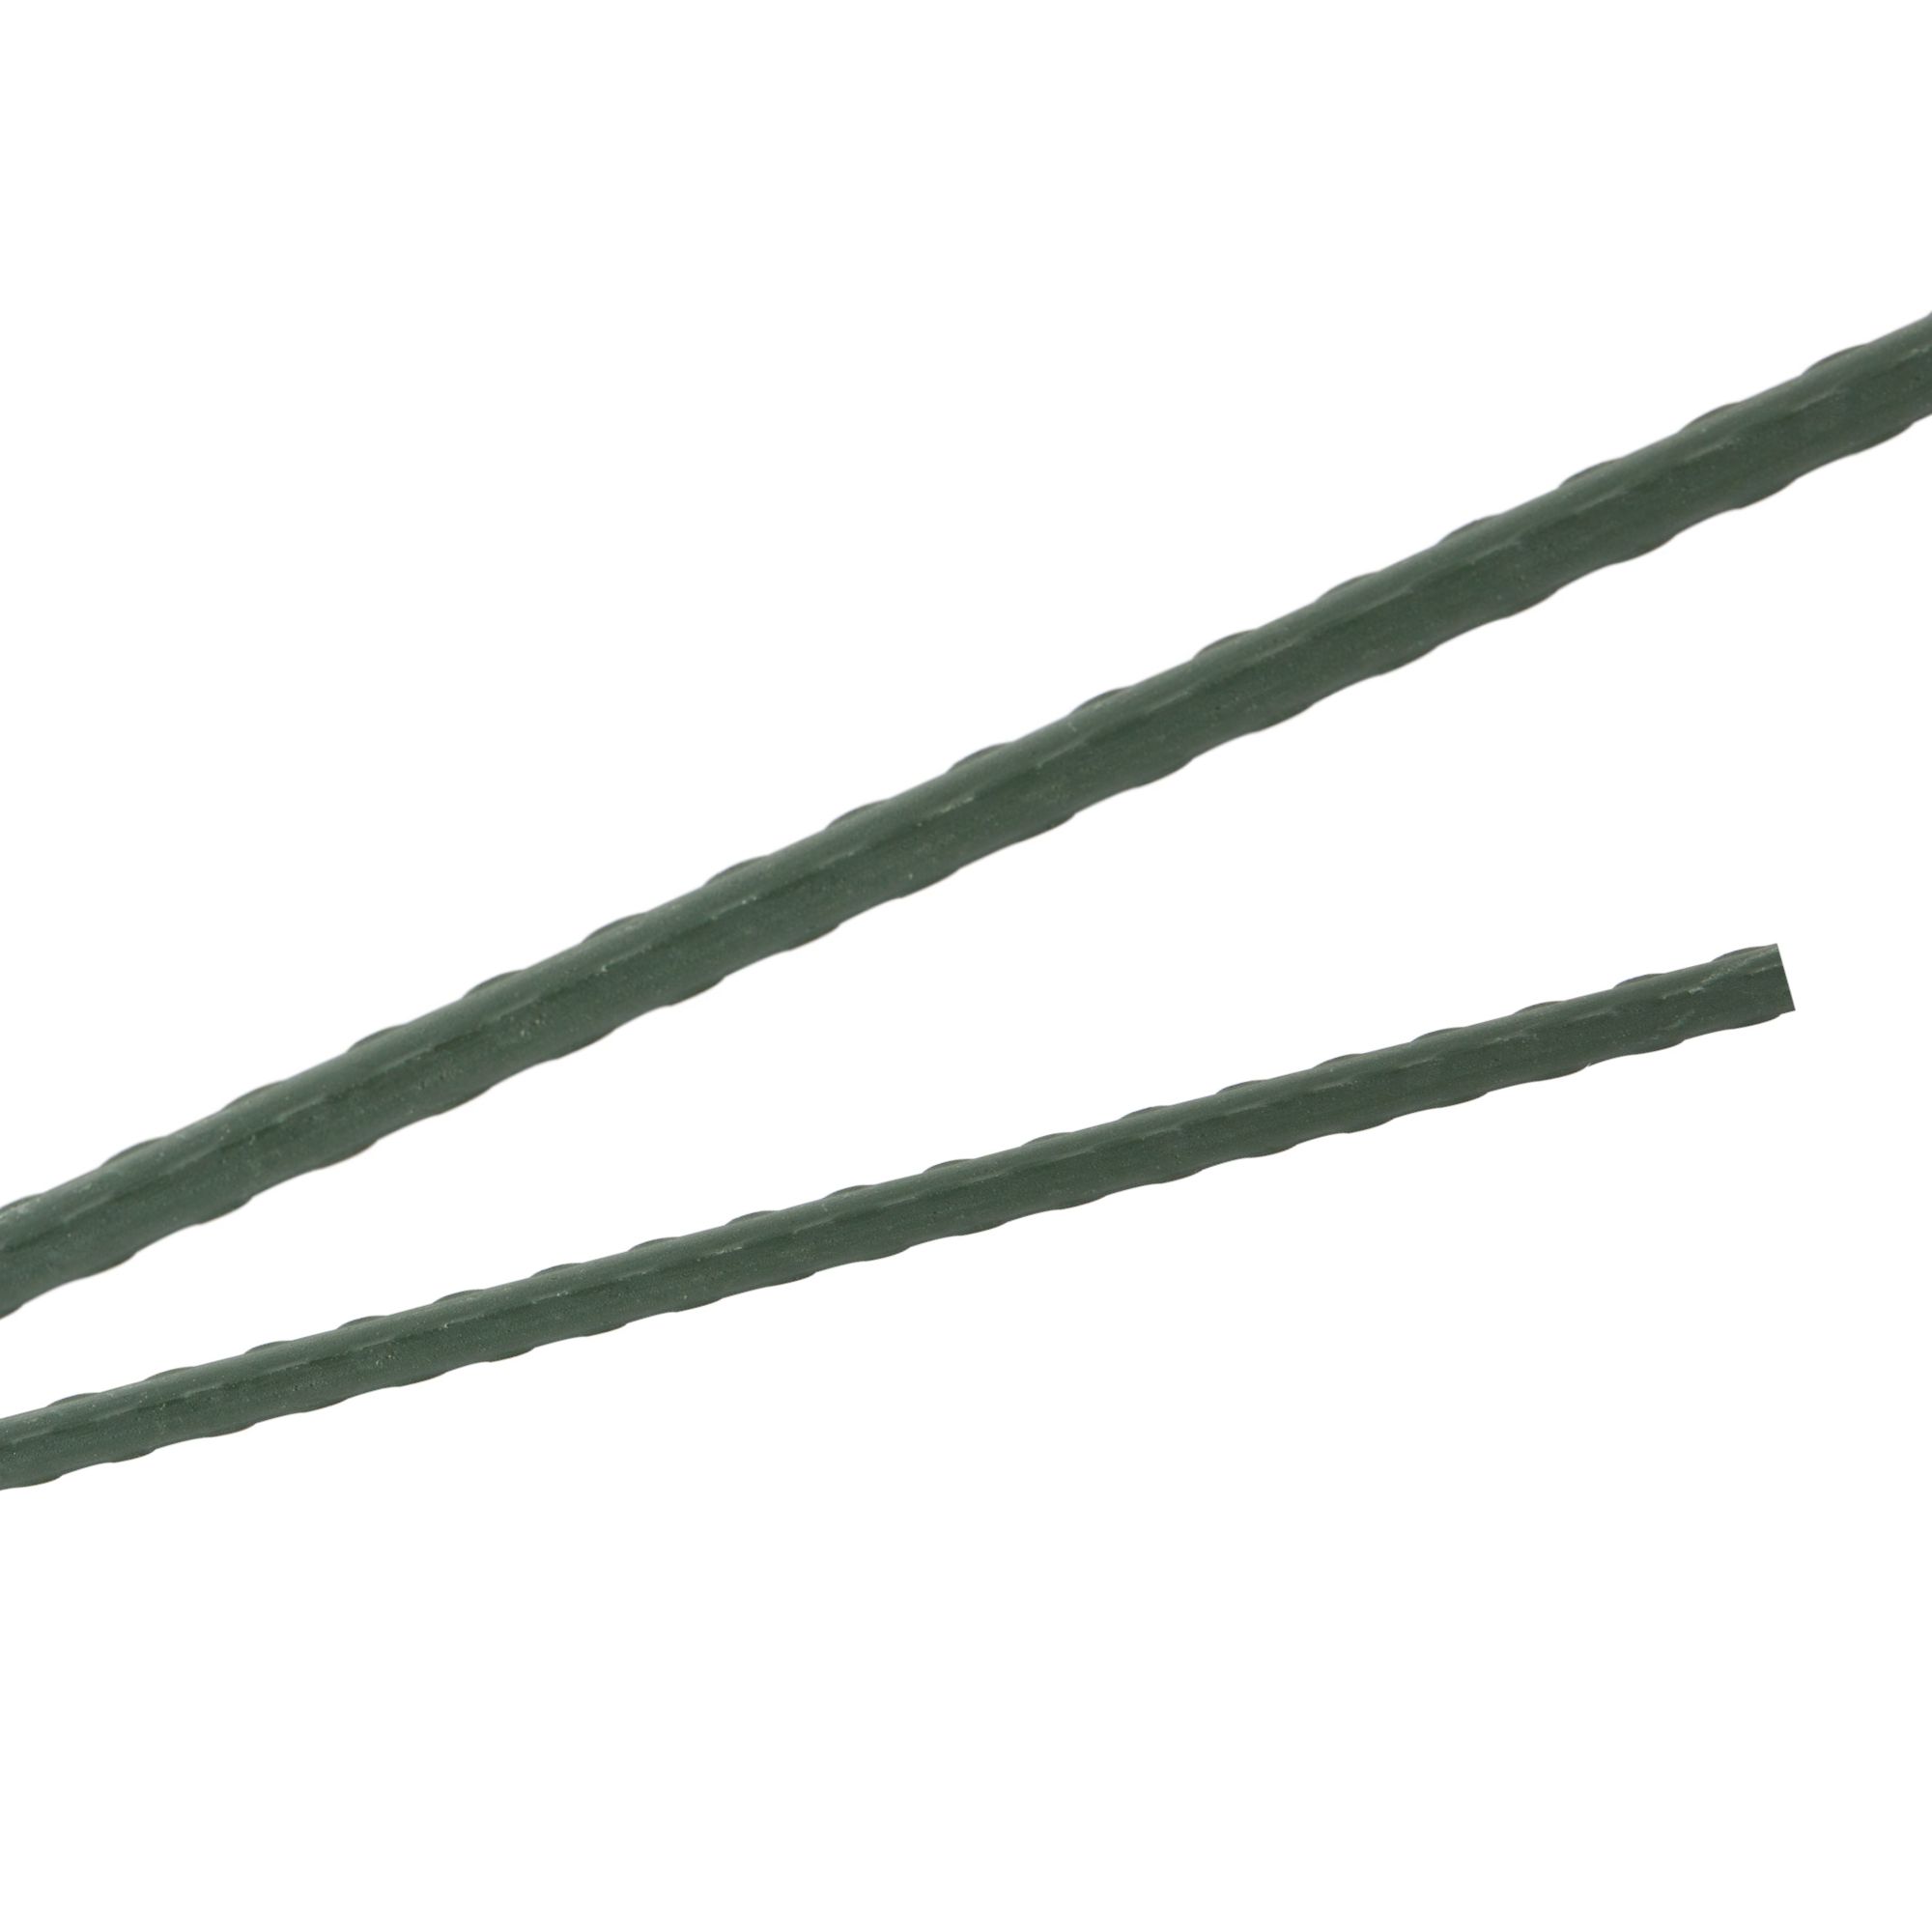 Tyč podpěrná, 16mm, 180cm, kov+PVC, zelená 0.217000 Kg GIGA Sklad20 45659 123